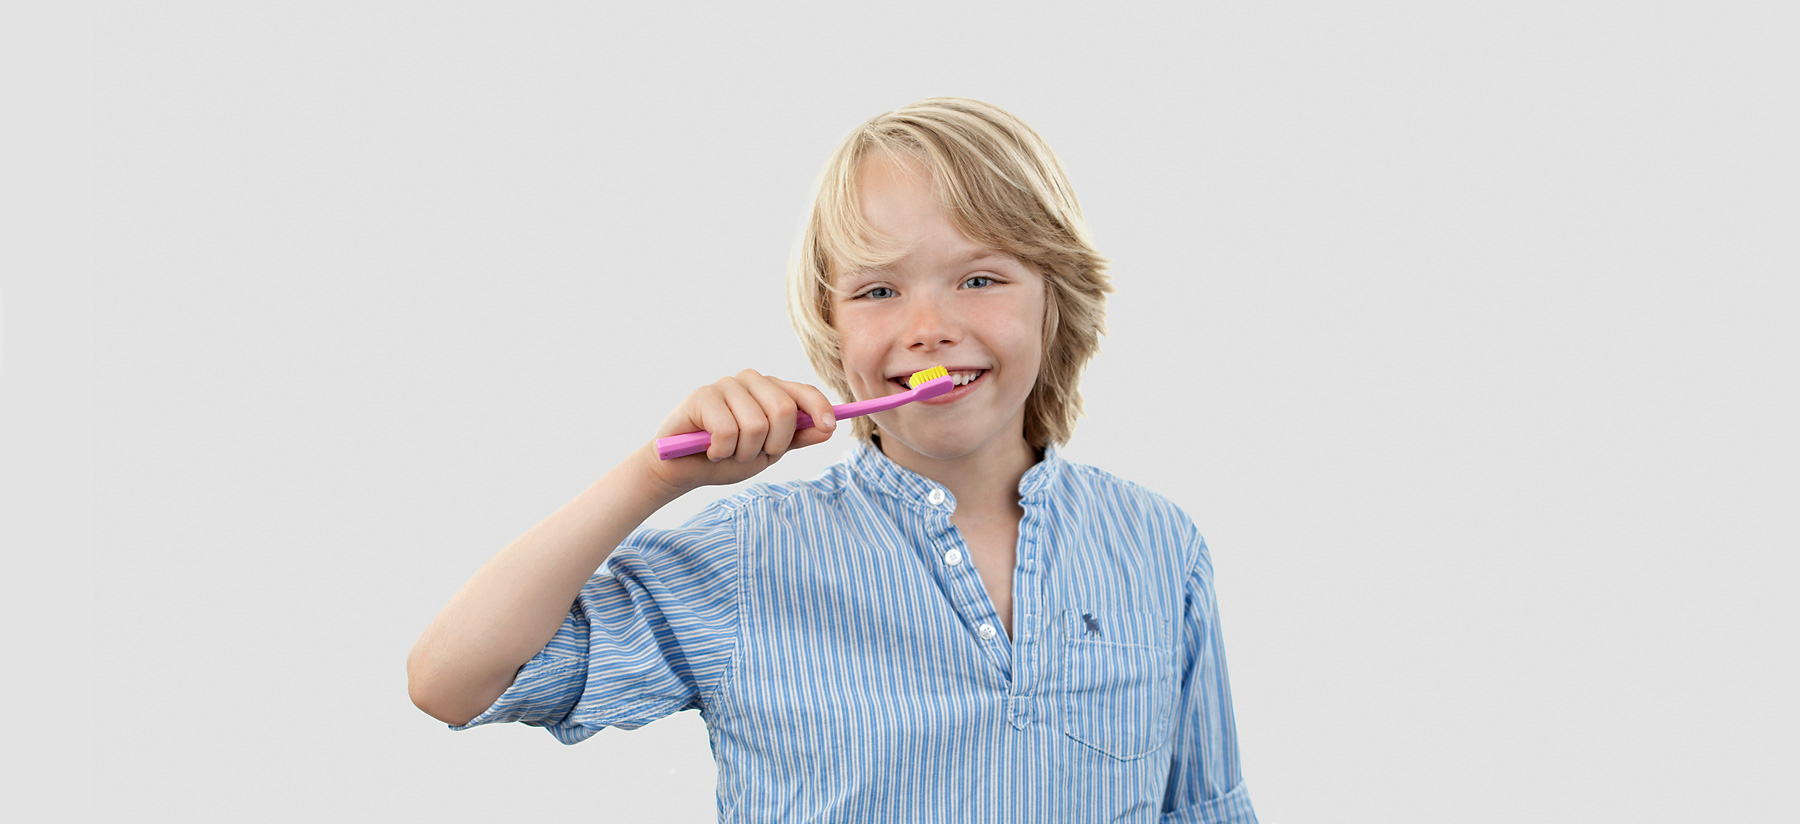 Dentalhygiene (Prophylaxe) - Praxis für Zahnheilkunde Dr. Borchard